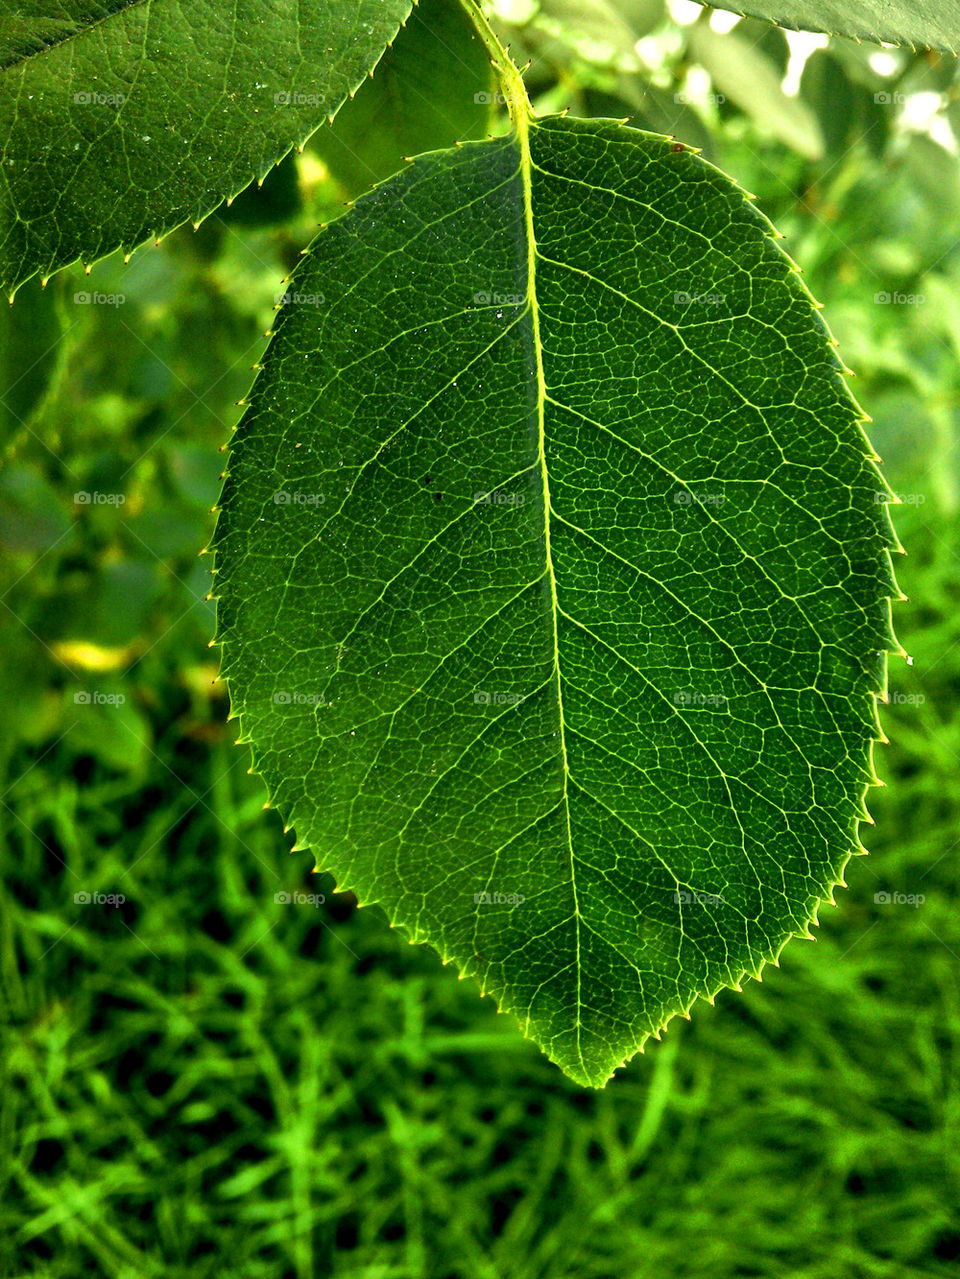 leaf zoom in Garden 